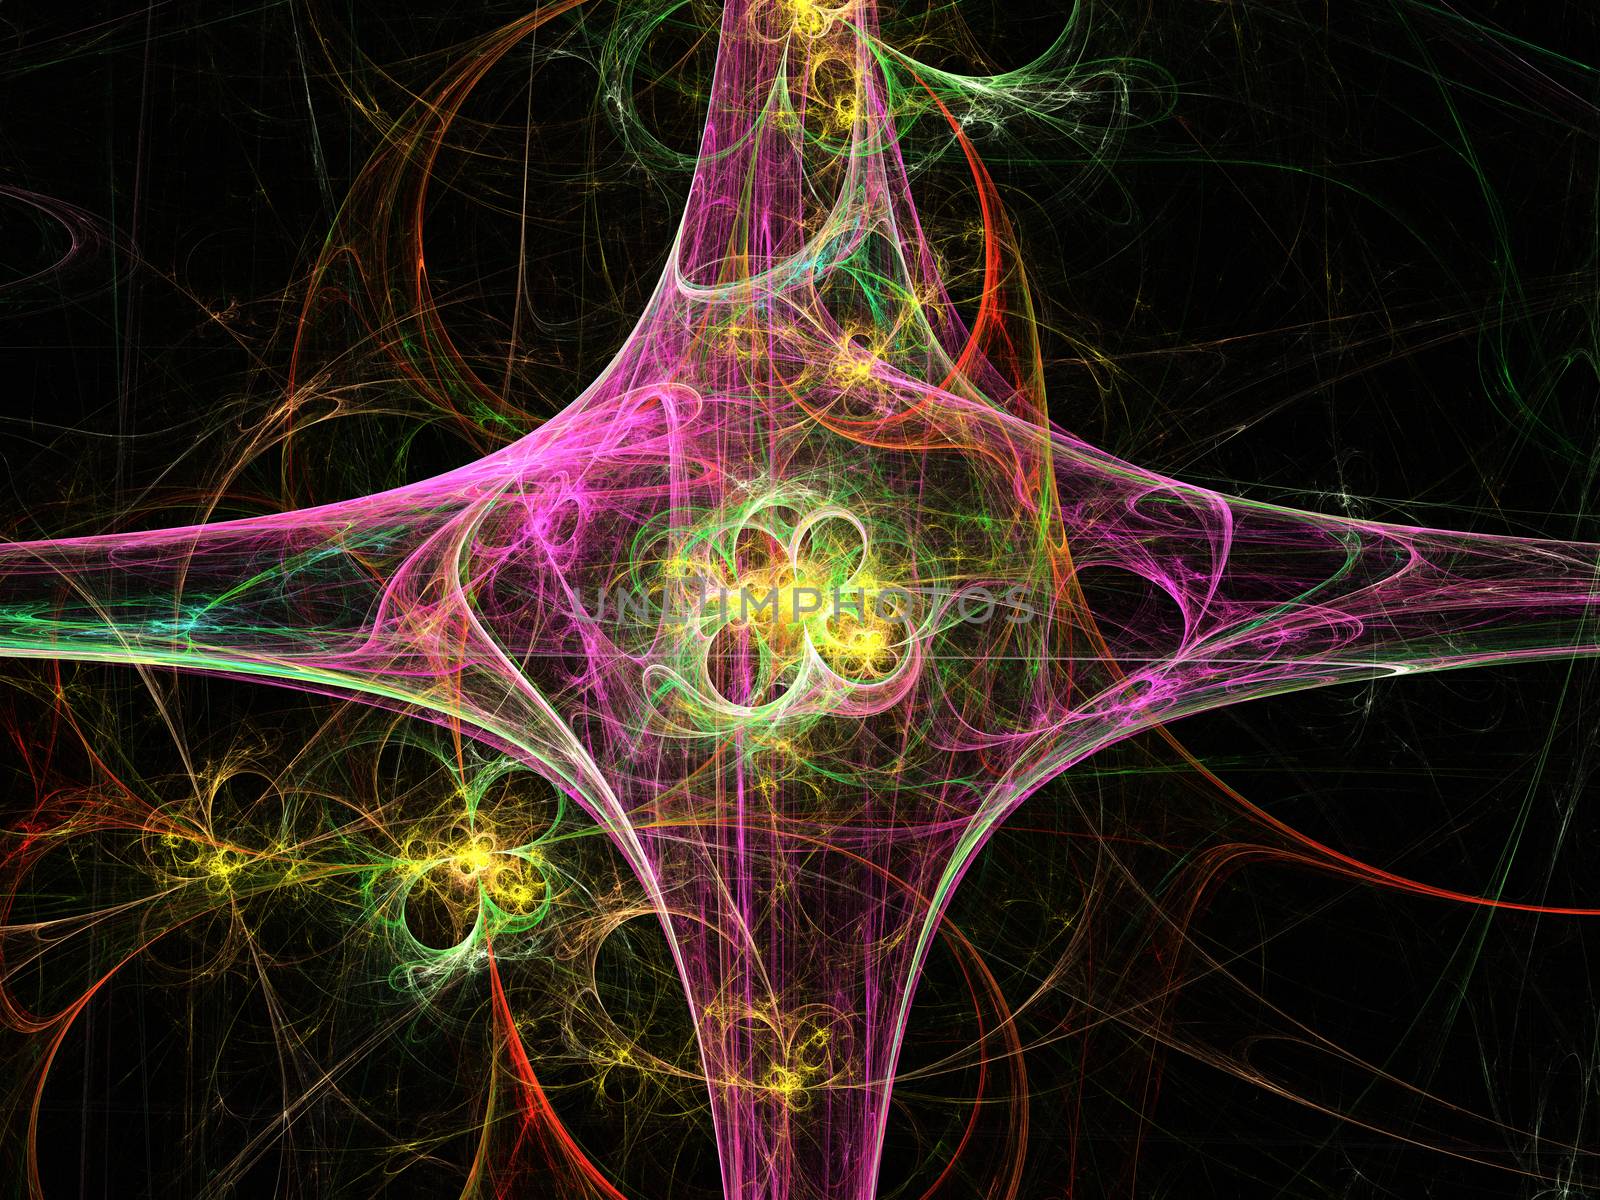 Fractal flower, digital artwork for creative graphic design by Sem007